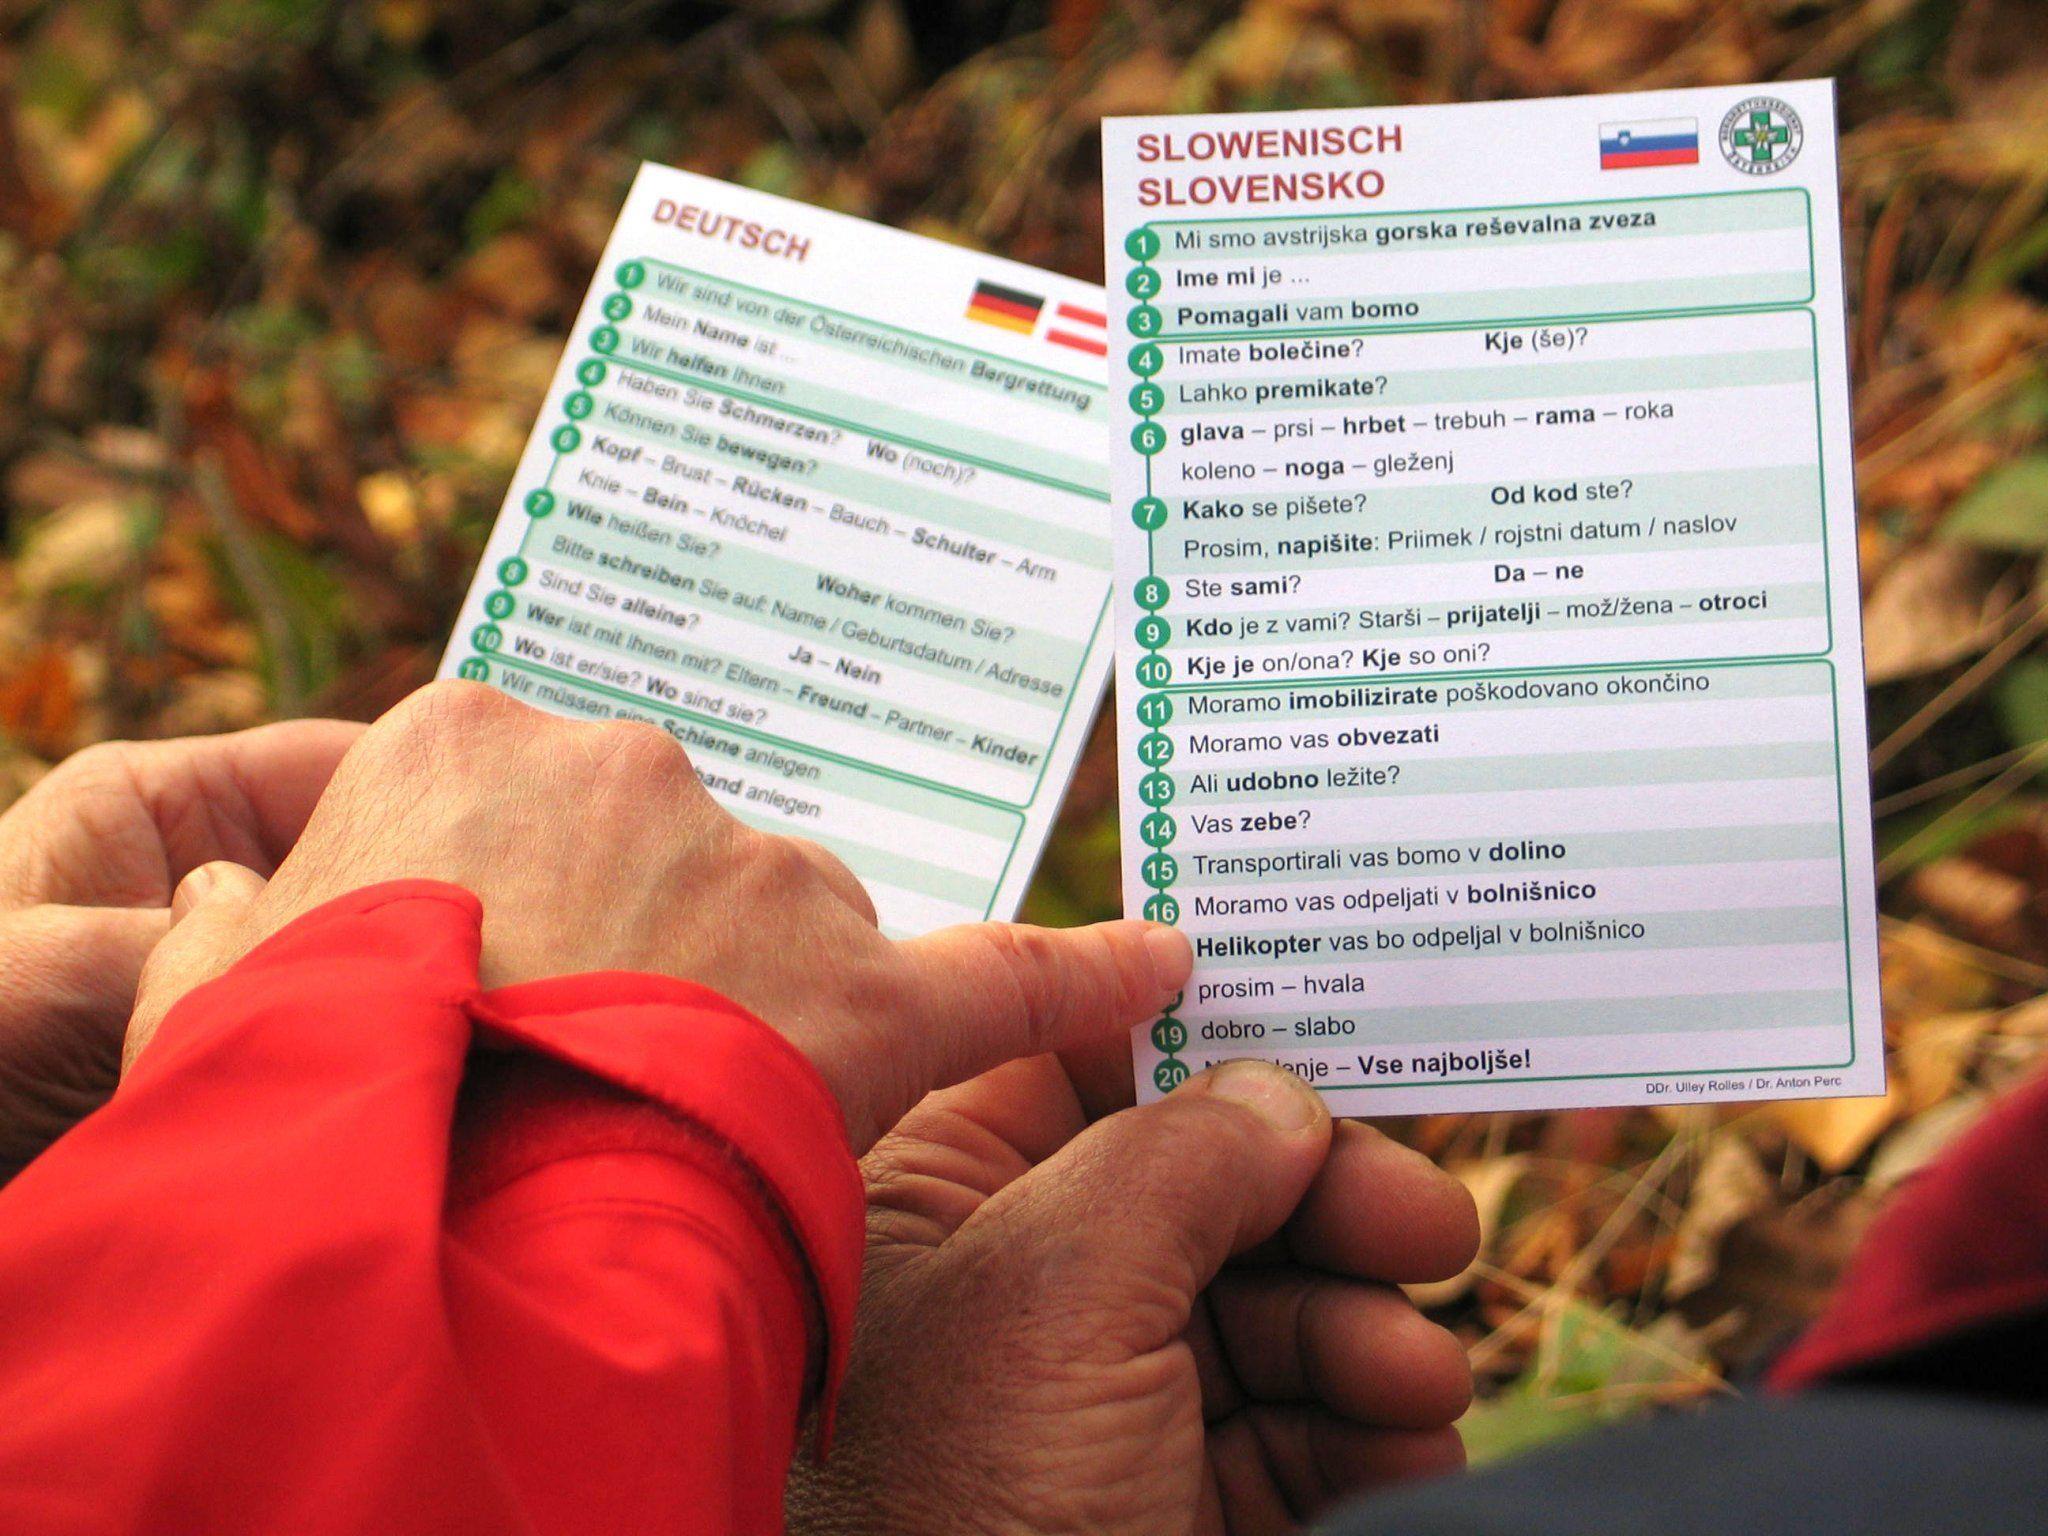 Wetterfeste Sprachkarten dienen den Bergrettern als sprachliche Erste Hilfe bei der Bergung von ausländischen Verunglückten.